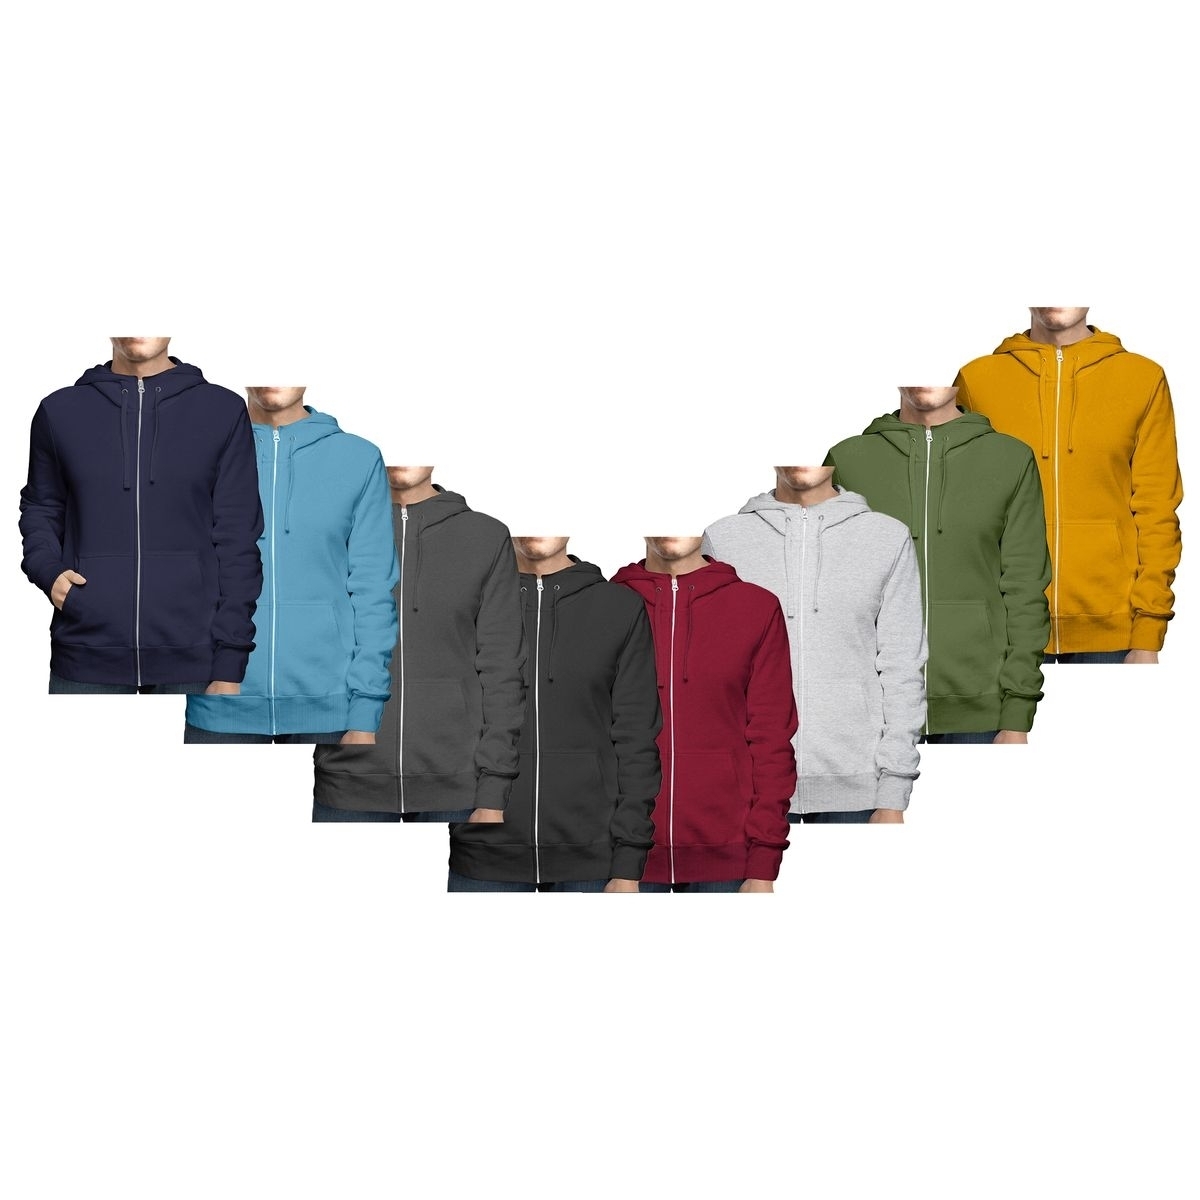 Men's Big & Tall Winter Warm Soft Cozy Full Zip-Up Fleece Lined Hoodie Sweatshirt - Navy, 3X